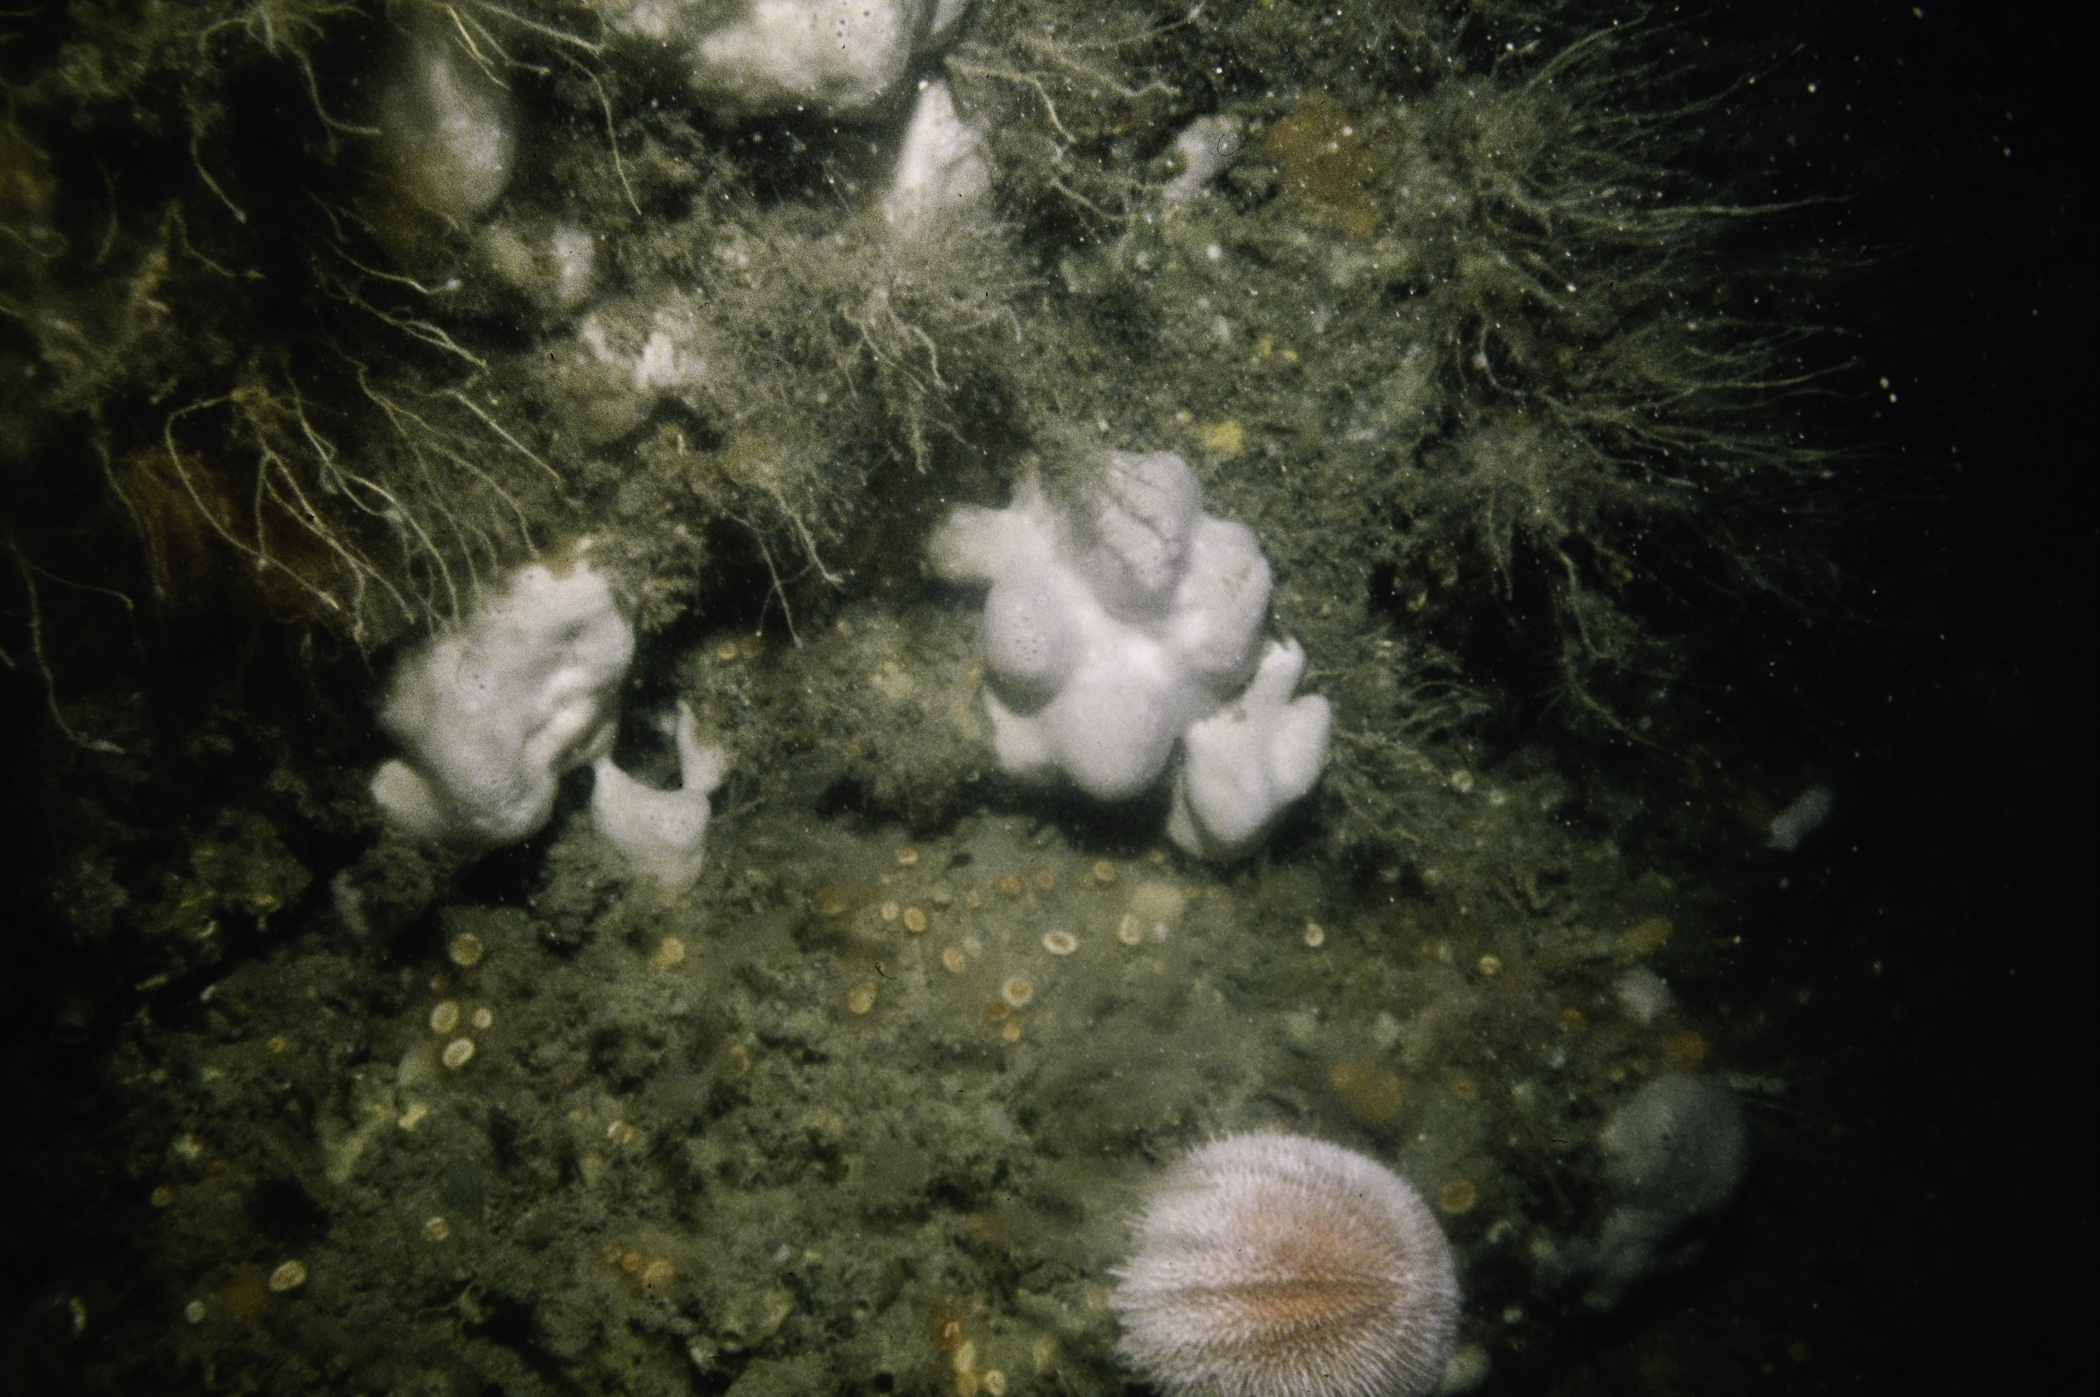 Pachymatisma johnstonia, Caryophyllia smithii, Tubularia indivisa, Ectopleura larynx, Echinus esculentus. Site: NE of Farganlack Point, Rathlin Is. 